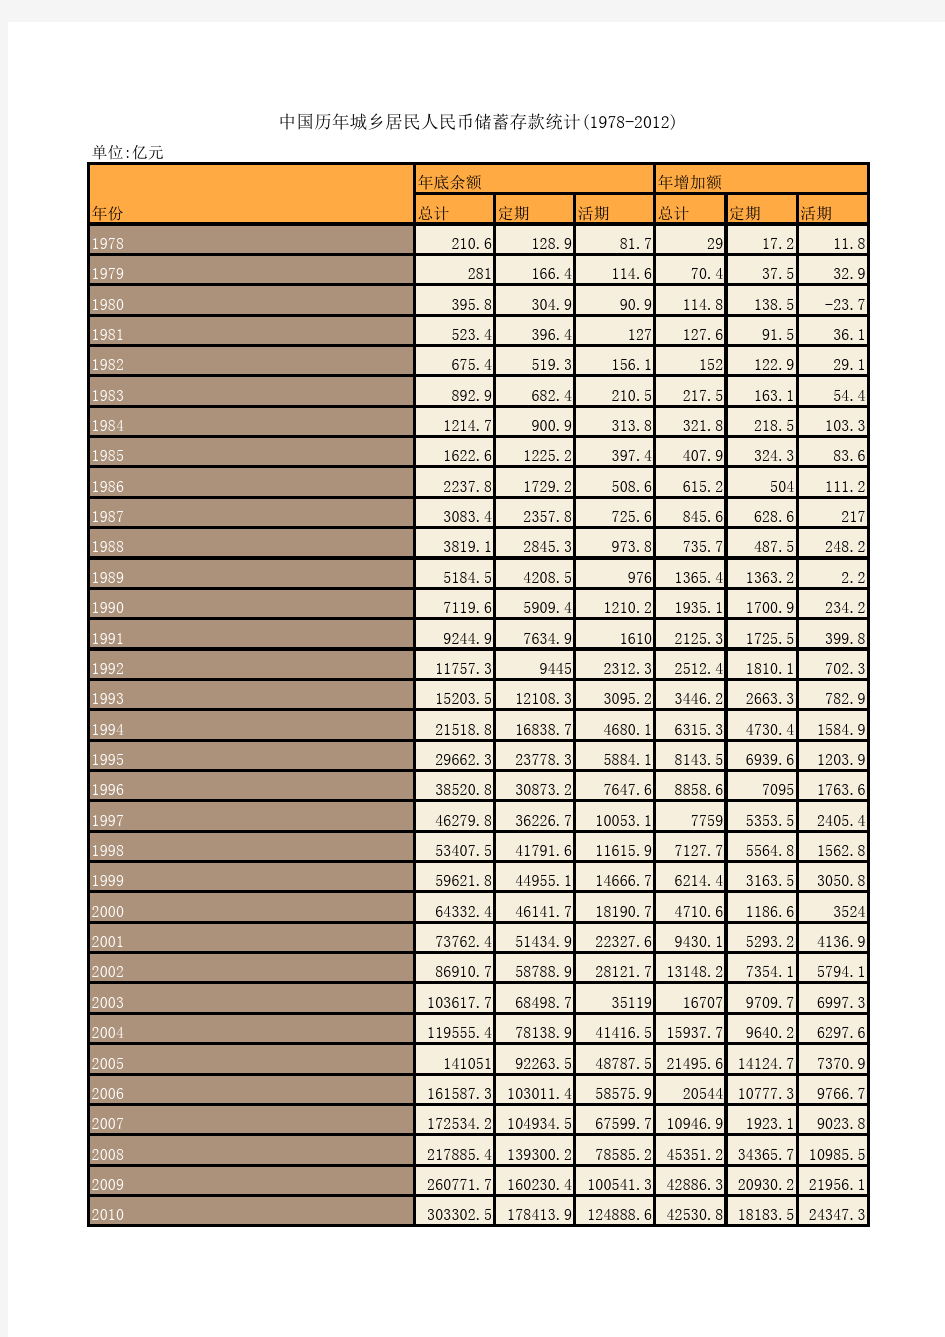 中国历年城乡居民人民币储蓄存款统计(1978-2012)